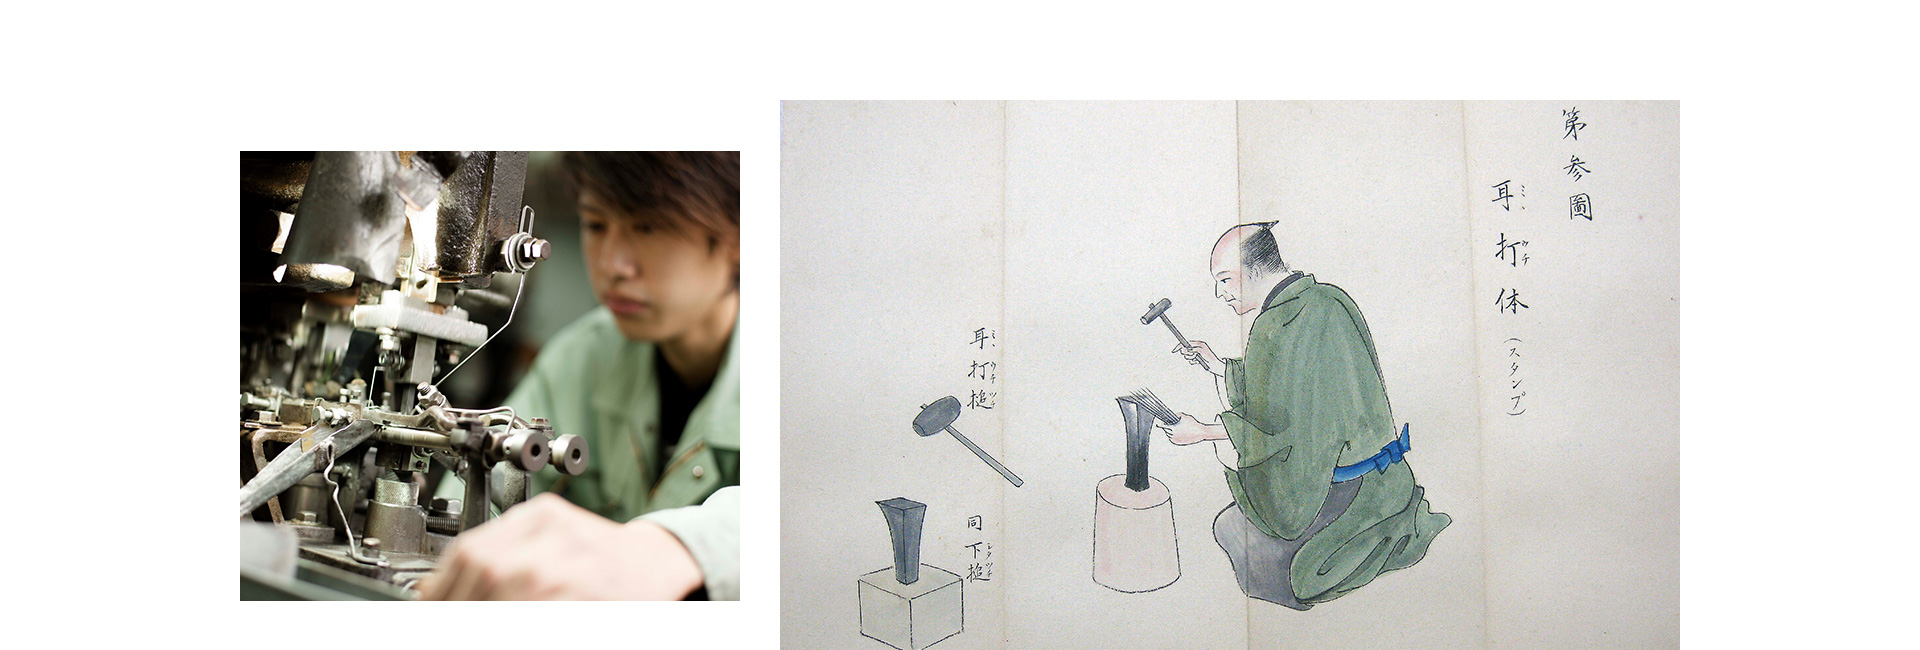 広島から世界へ―広島の伝統を受け継いだ手縫い針